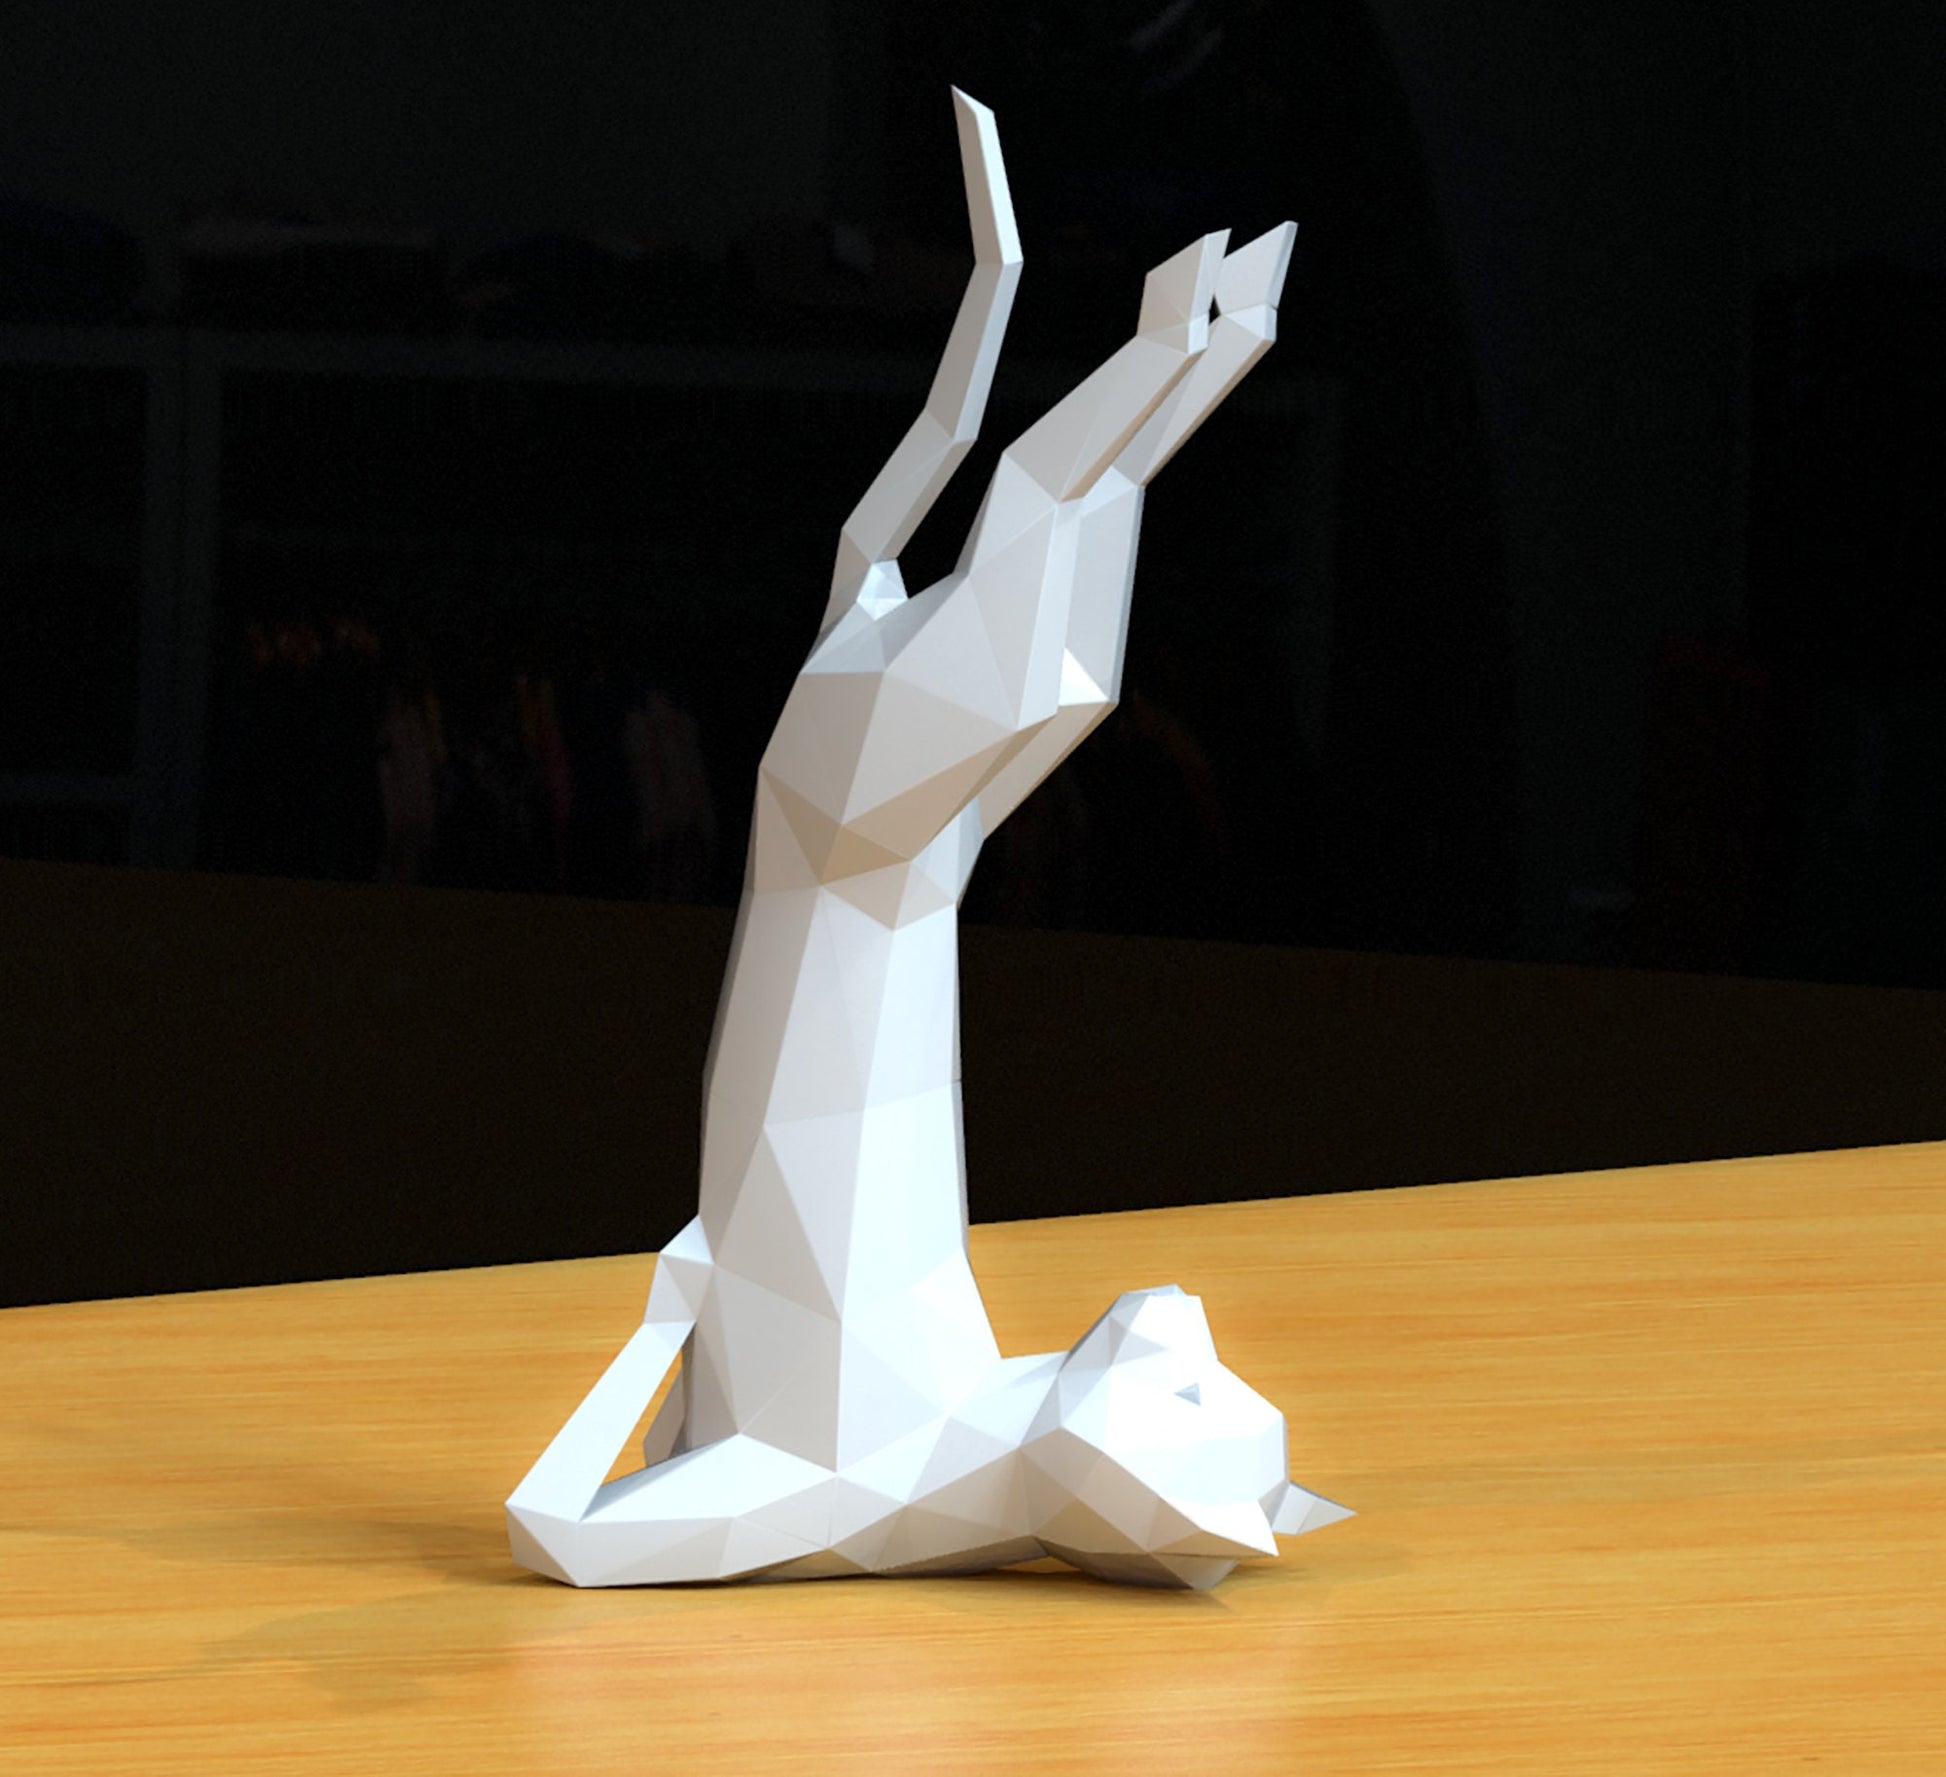 papercraft cat, yoga cat, paper sculpture cat, paper model, diy cat